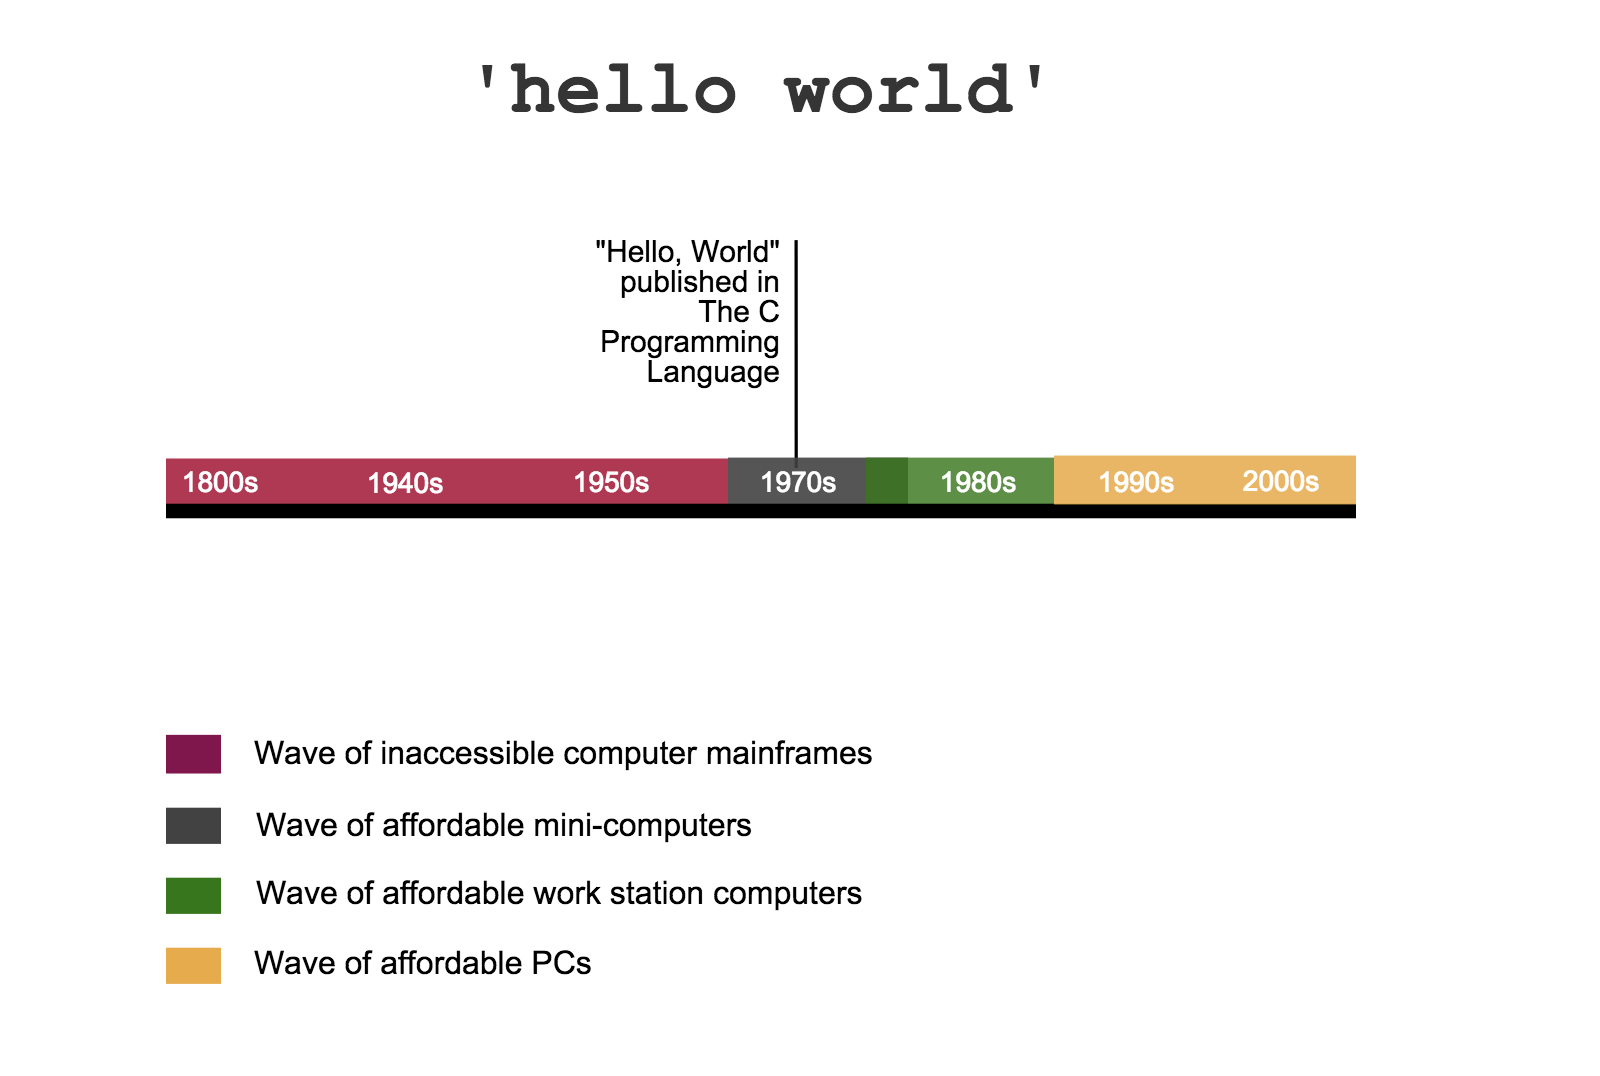 Hello world timeline 